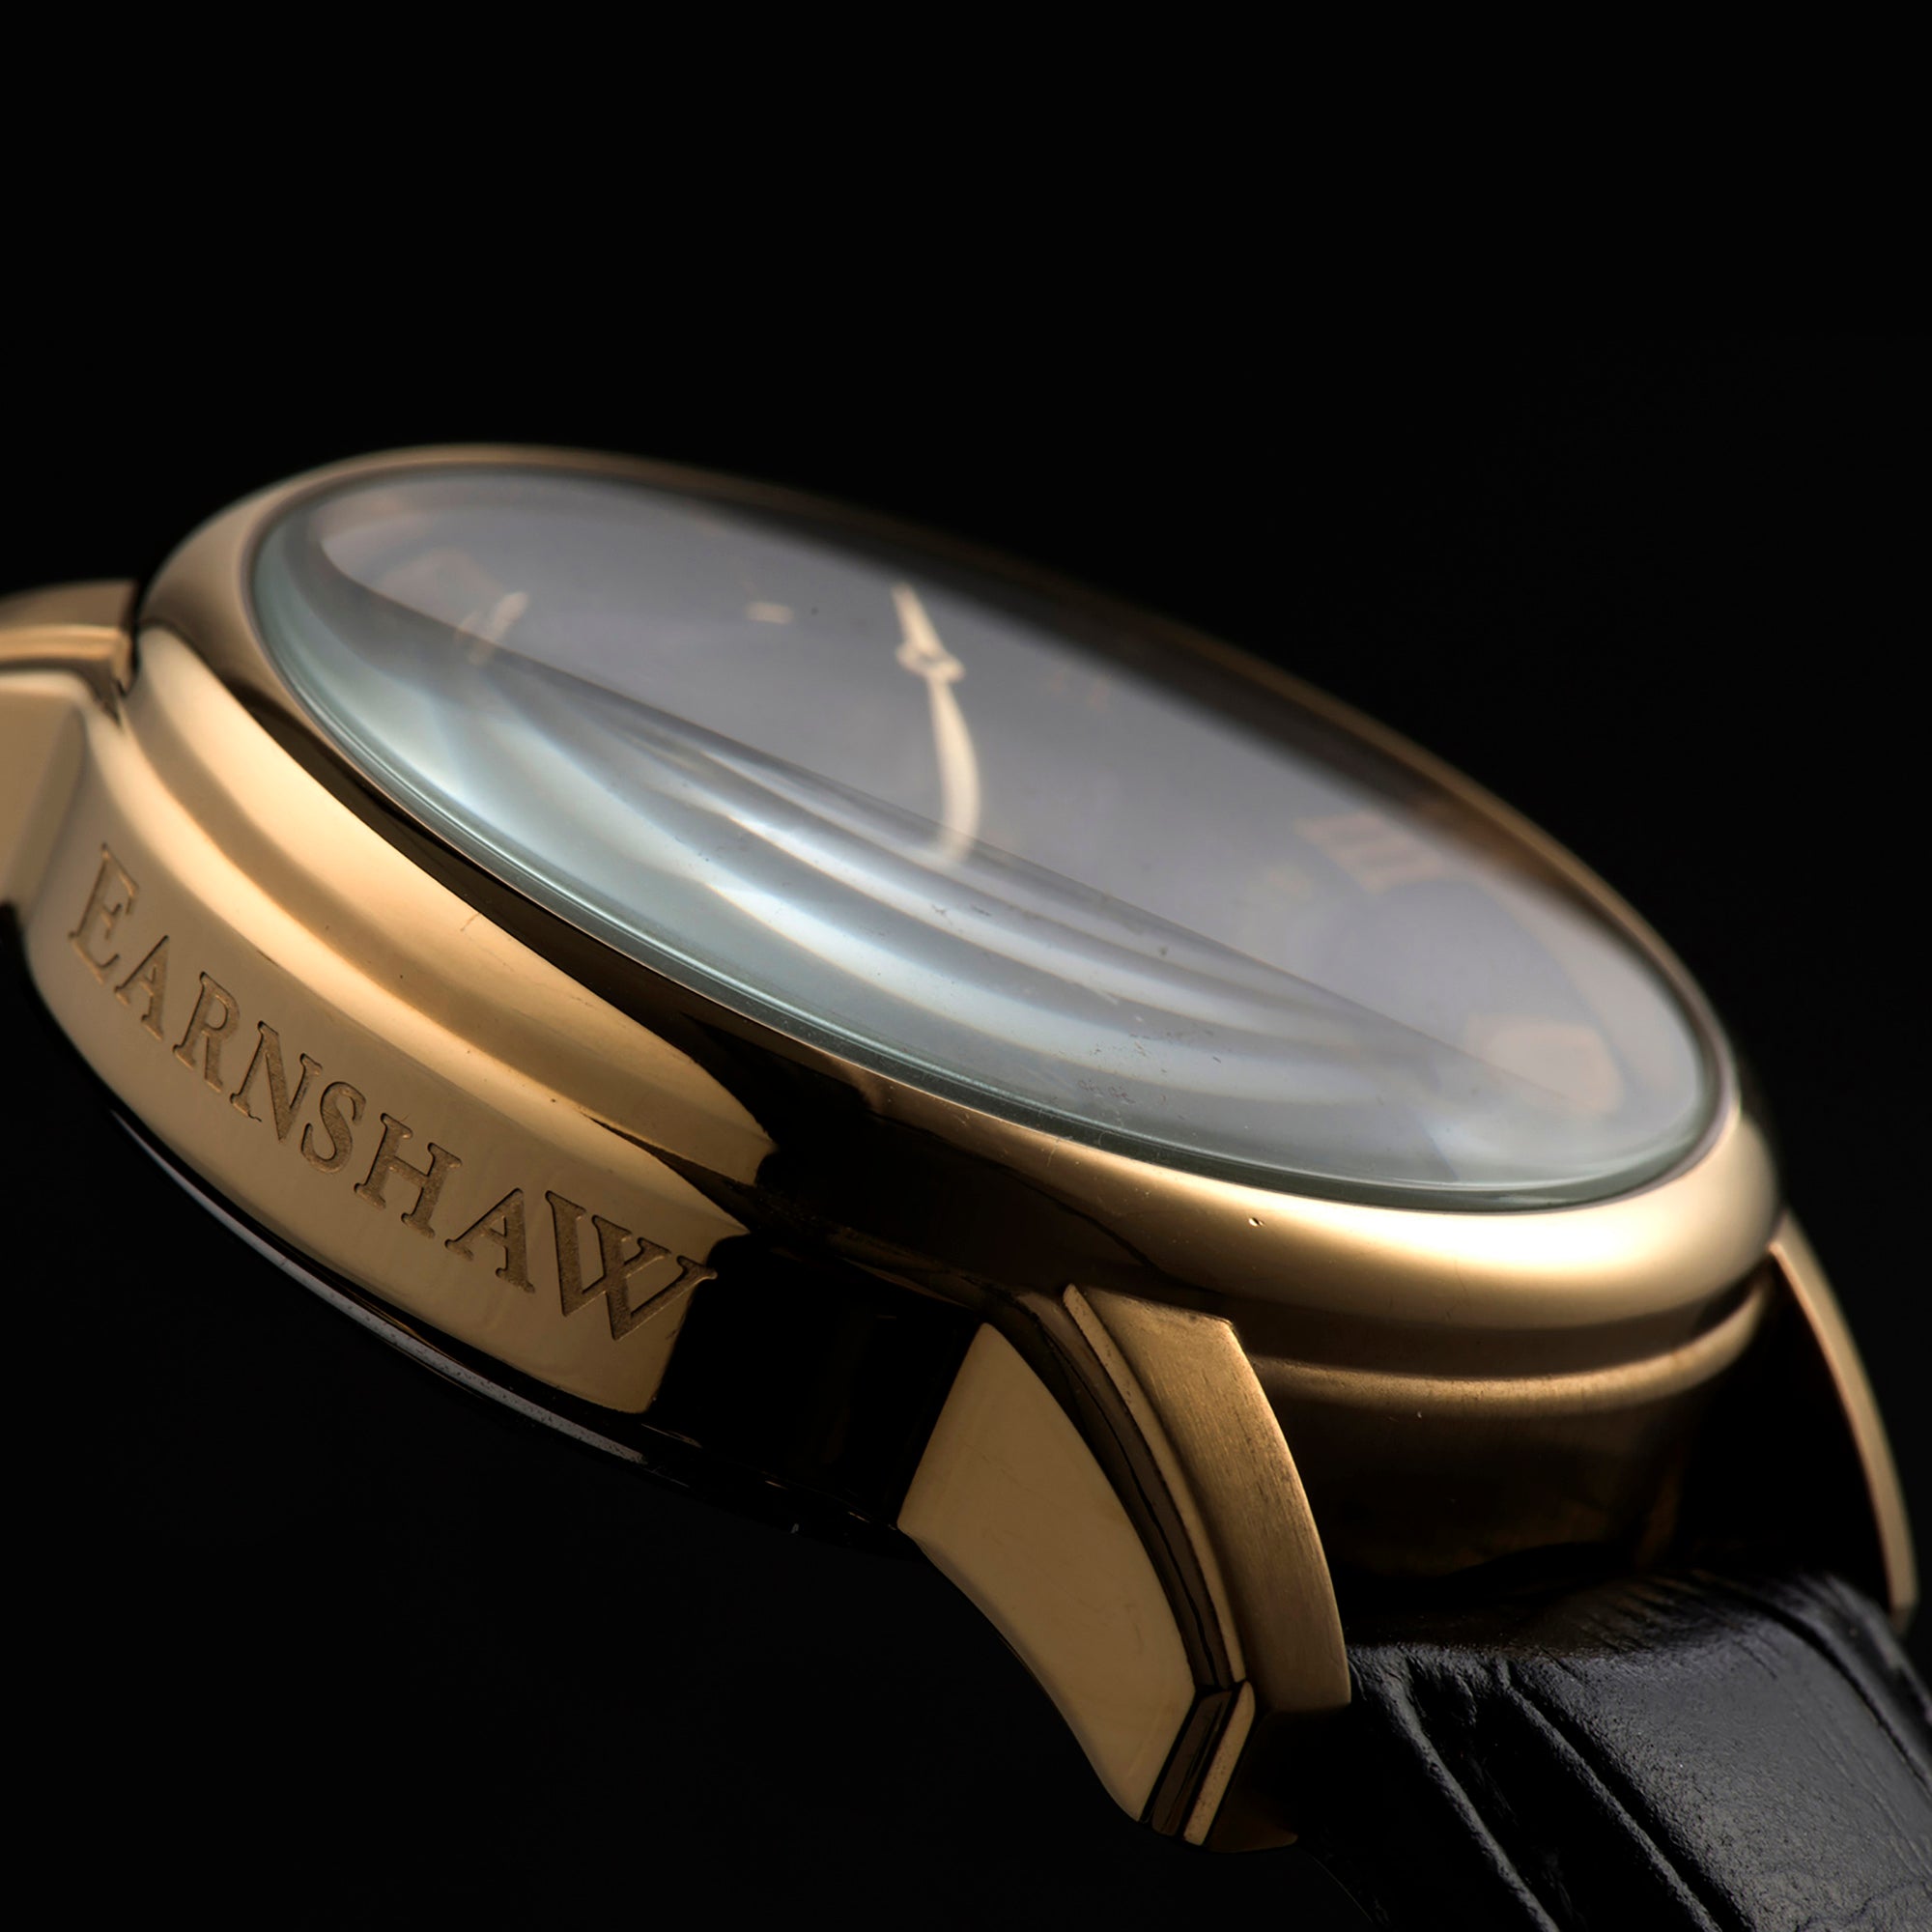 Thomas Earnshaw Thomas Earnshaw Longitude Men's Automatic Skeleton Caviar Black Watch ES-8006-05